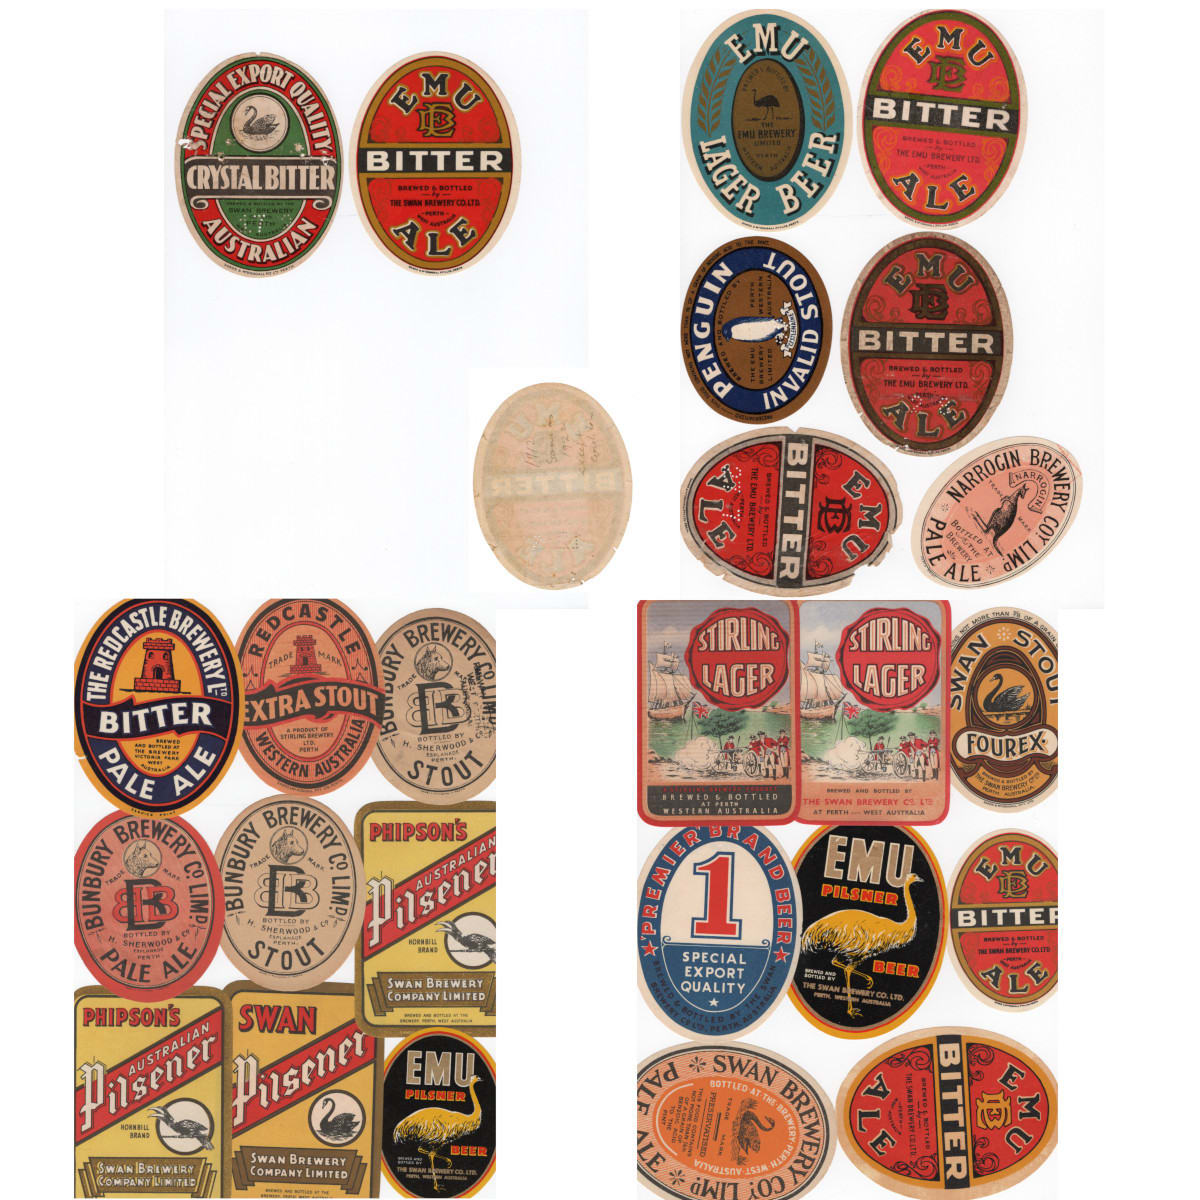 25 WA Beer Labels: Emu Brewery; Swan Brewery; Bunbury Brewery, Sherwood, Perth; Narrogin Brewery; Redcastle Brewery. (Western Australia)